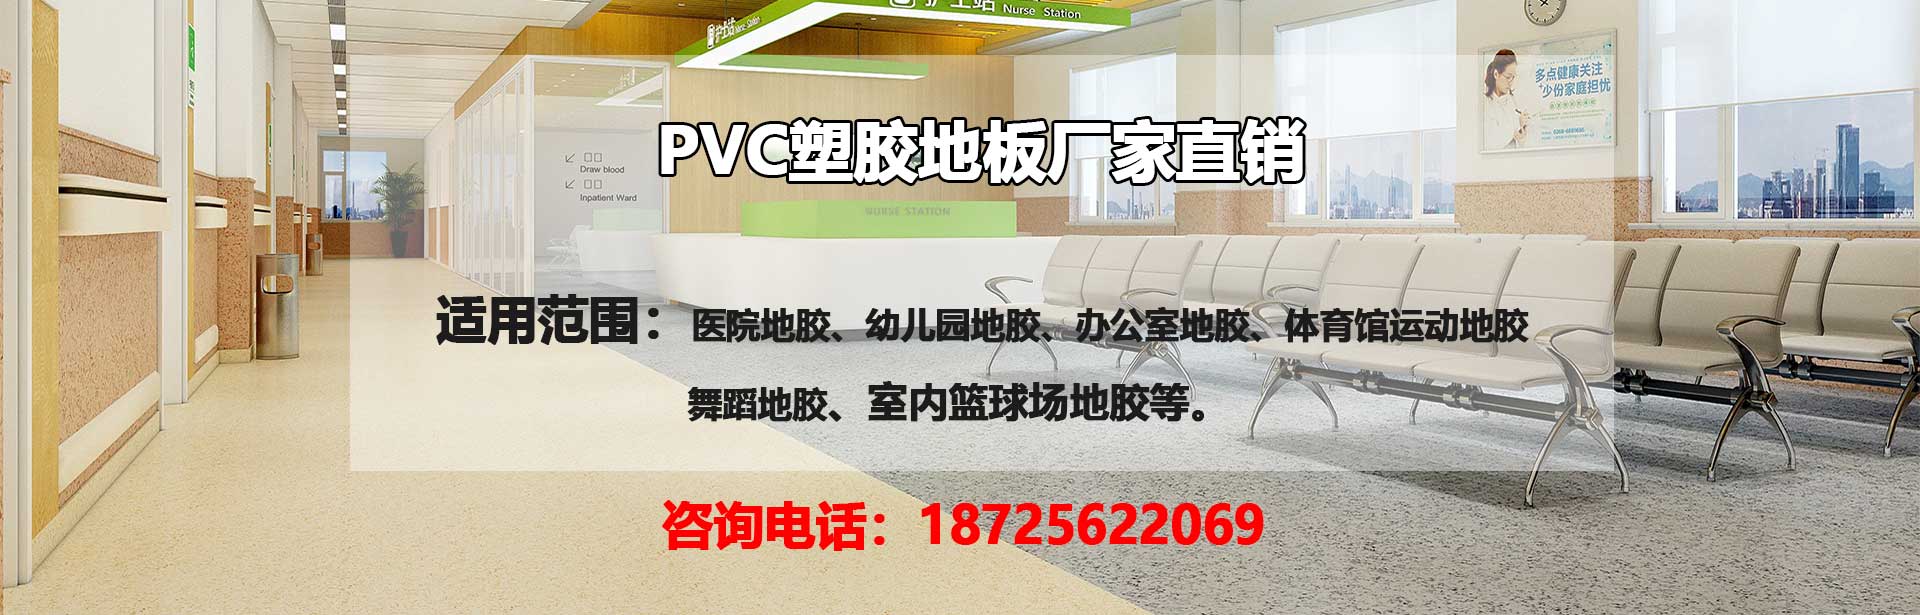 广州PVC塑胶地板